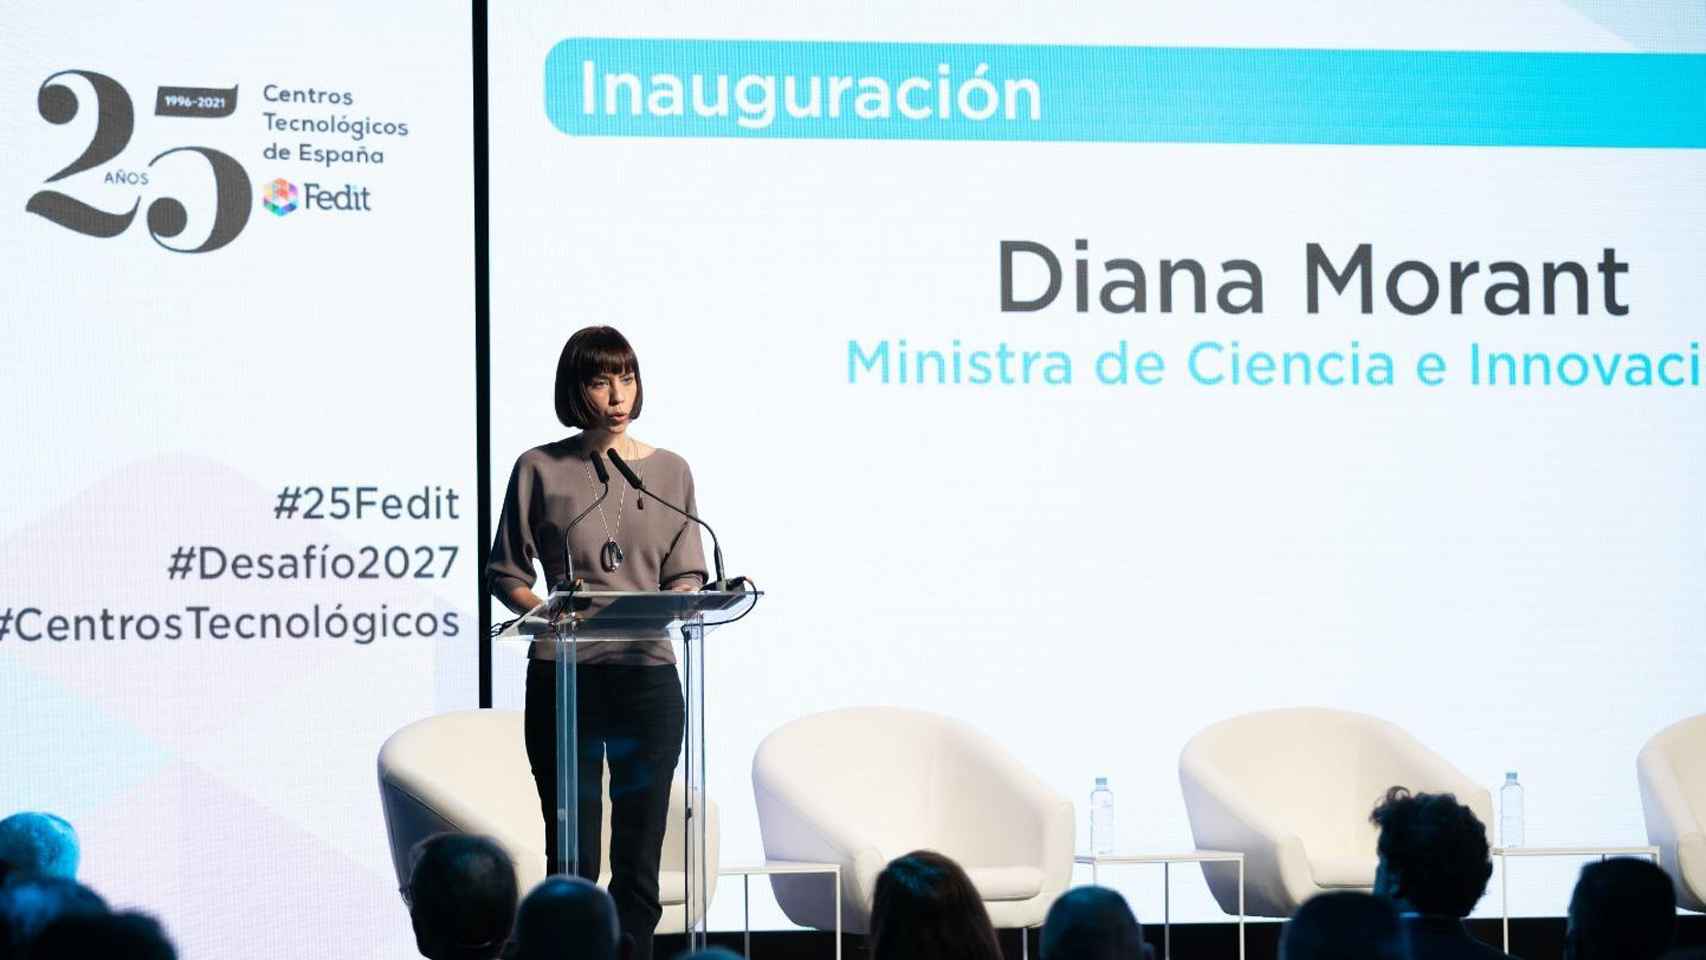 La ministra de Ciencia e Innovación, Diana Morant, durante la inauguración del encuentro con motivo de los 25 años de Fedit.